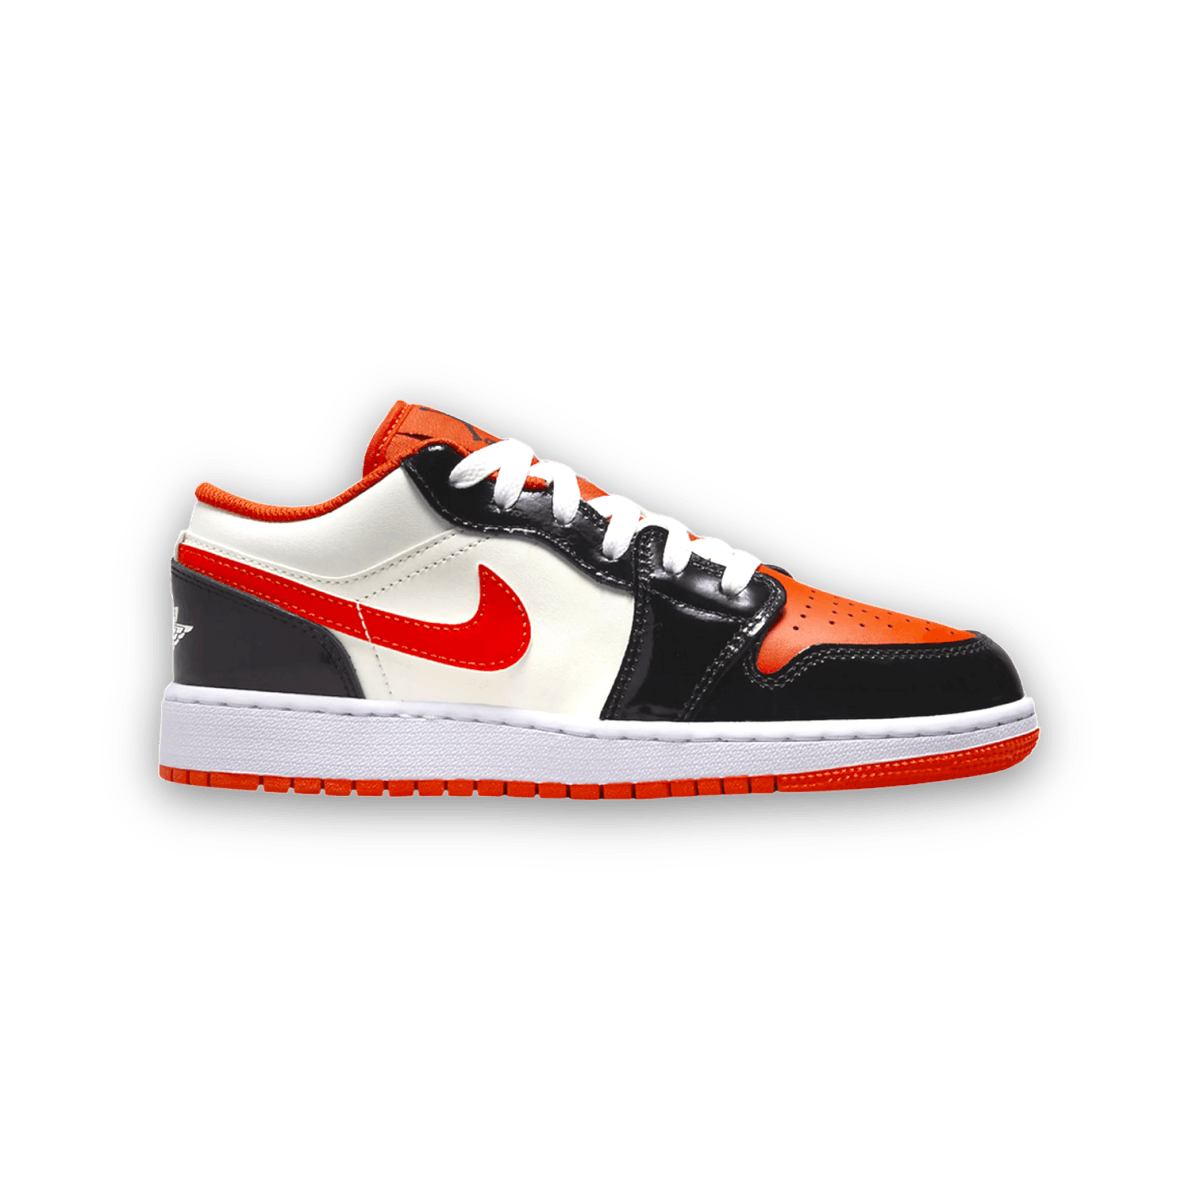 Air Jordan 1 Low SE 'Halloween' - Grade School - Low Sneaker - Jawns on Fire Sneakers & Streetwear